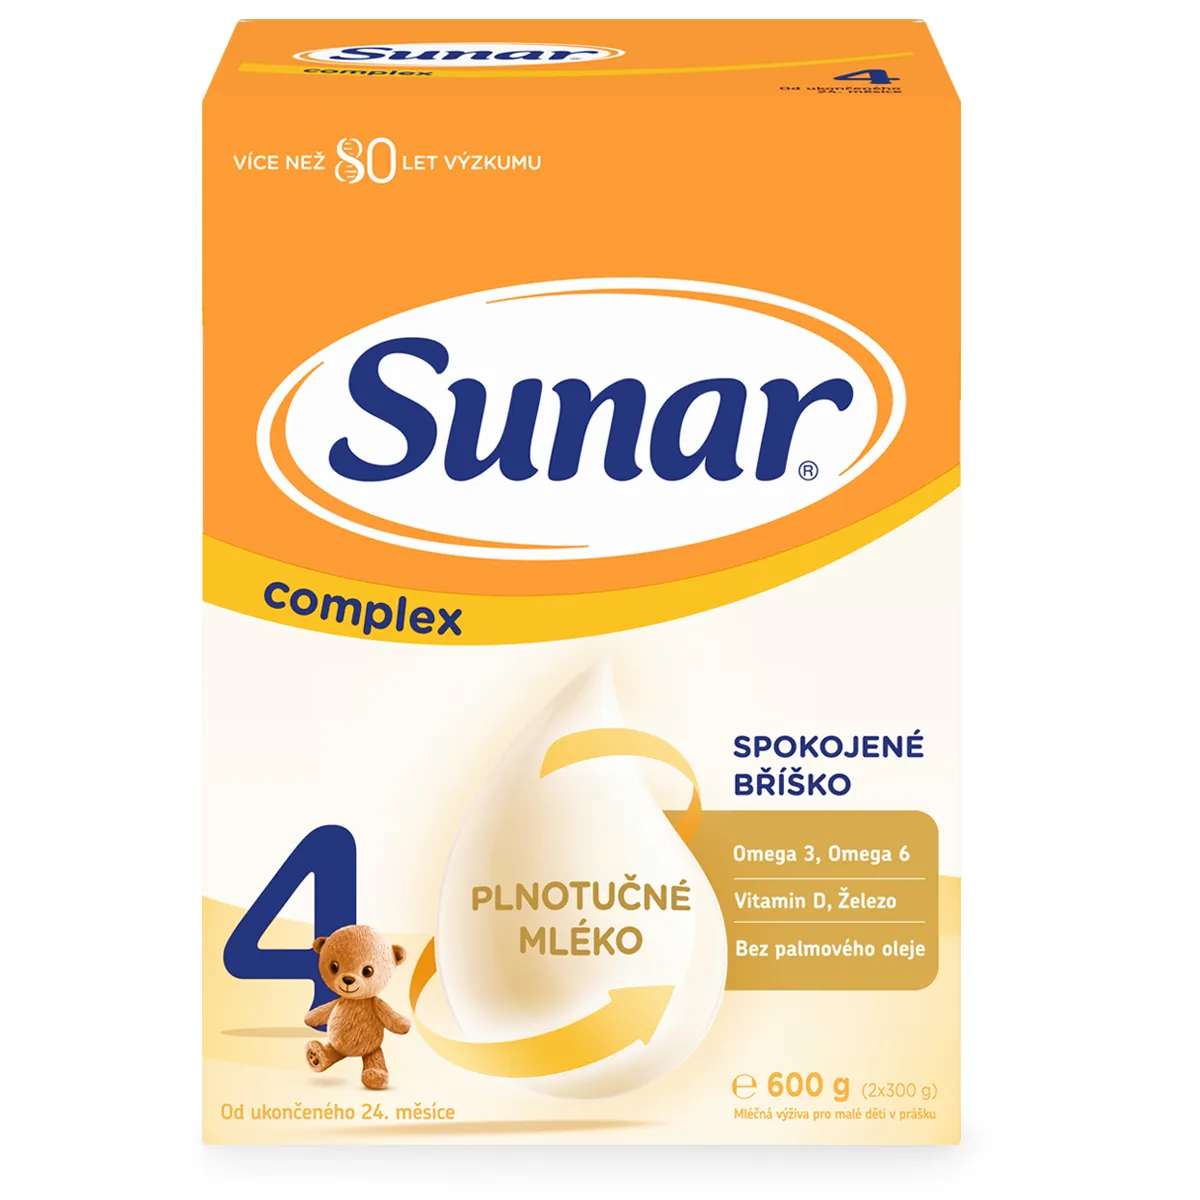 Sunar Complex 4 6×600 g, dojčenské mlieko, od 24. mesiaca